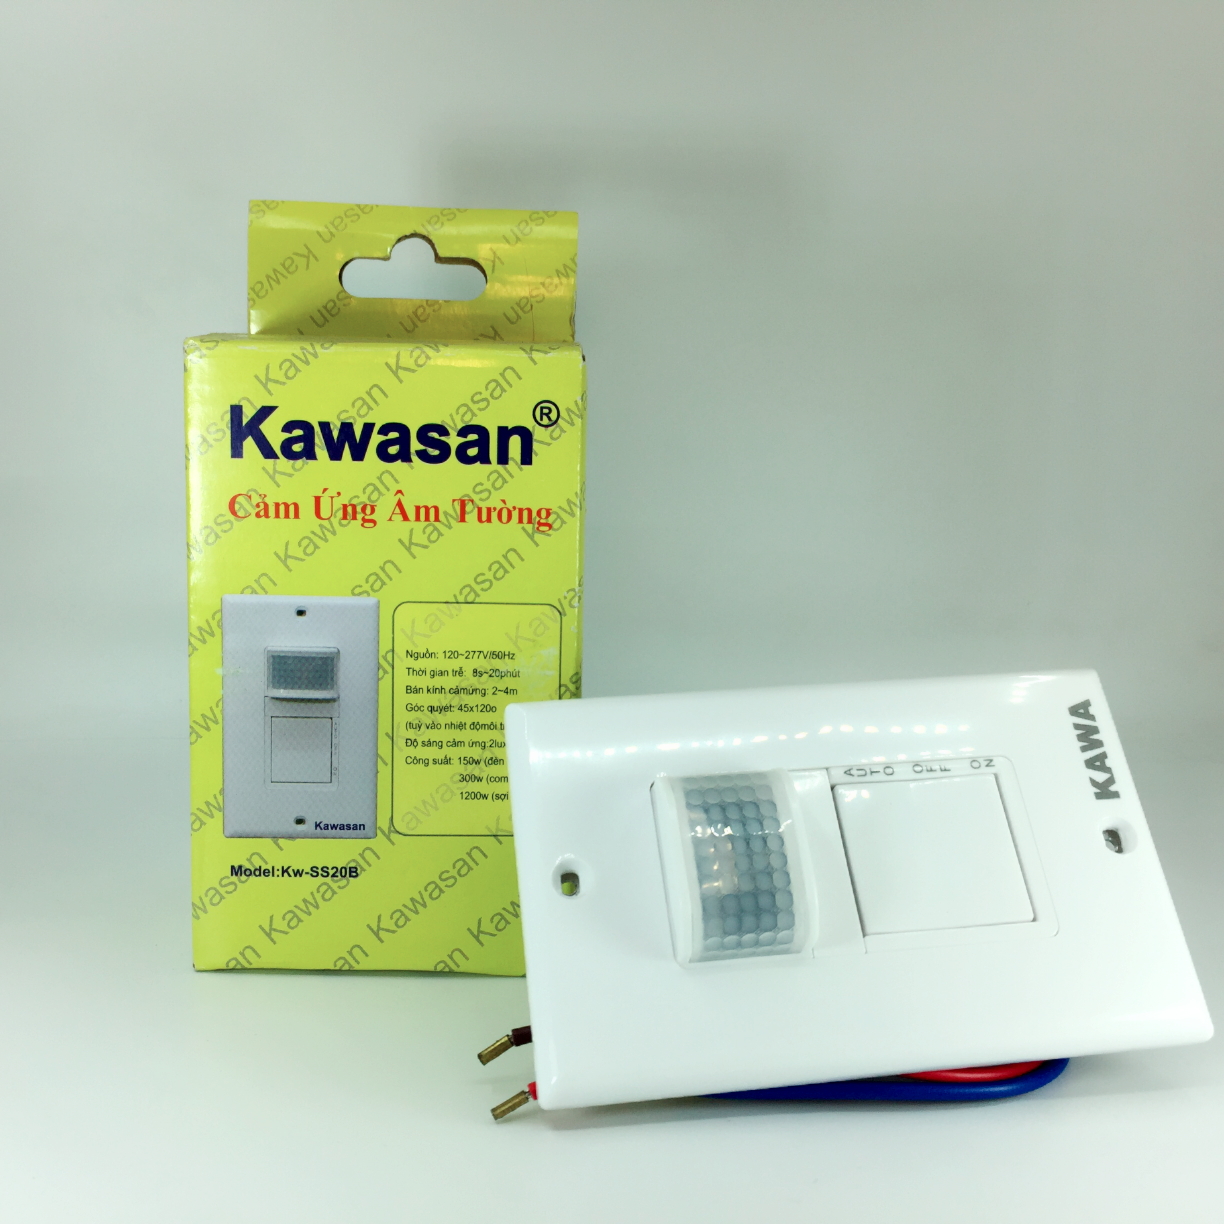 Cảm ứng hồng ngoại Kawa SS20B: Sử dụng cảm ứng hồng ngoại Kawa SS20B để tạo ra những trải nghiệm chiếu sáng không đụng hàng. Được trang bị công nghệ tiên tiến, sản phẩm này mang đến khả năng cảm biến chính xác và mạnh mẽ, sử dụng cho mọi mục đích chiếu sáng trong nhà. Hãy xem hình ảnh để khám phá thêm tính năng và tính năng của sản phẩm này.